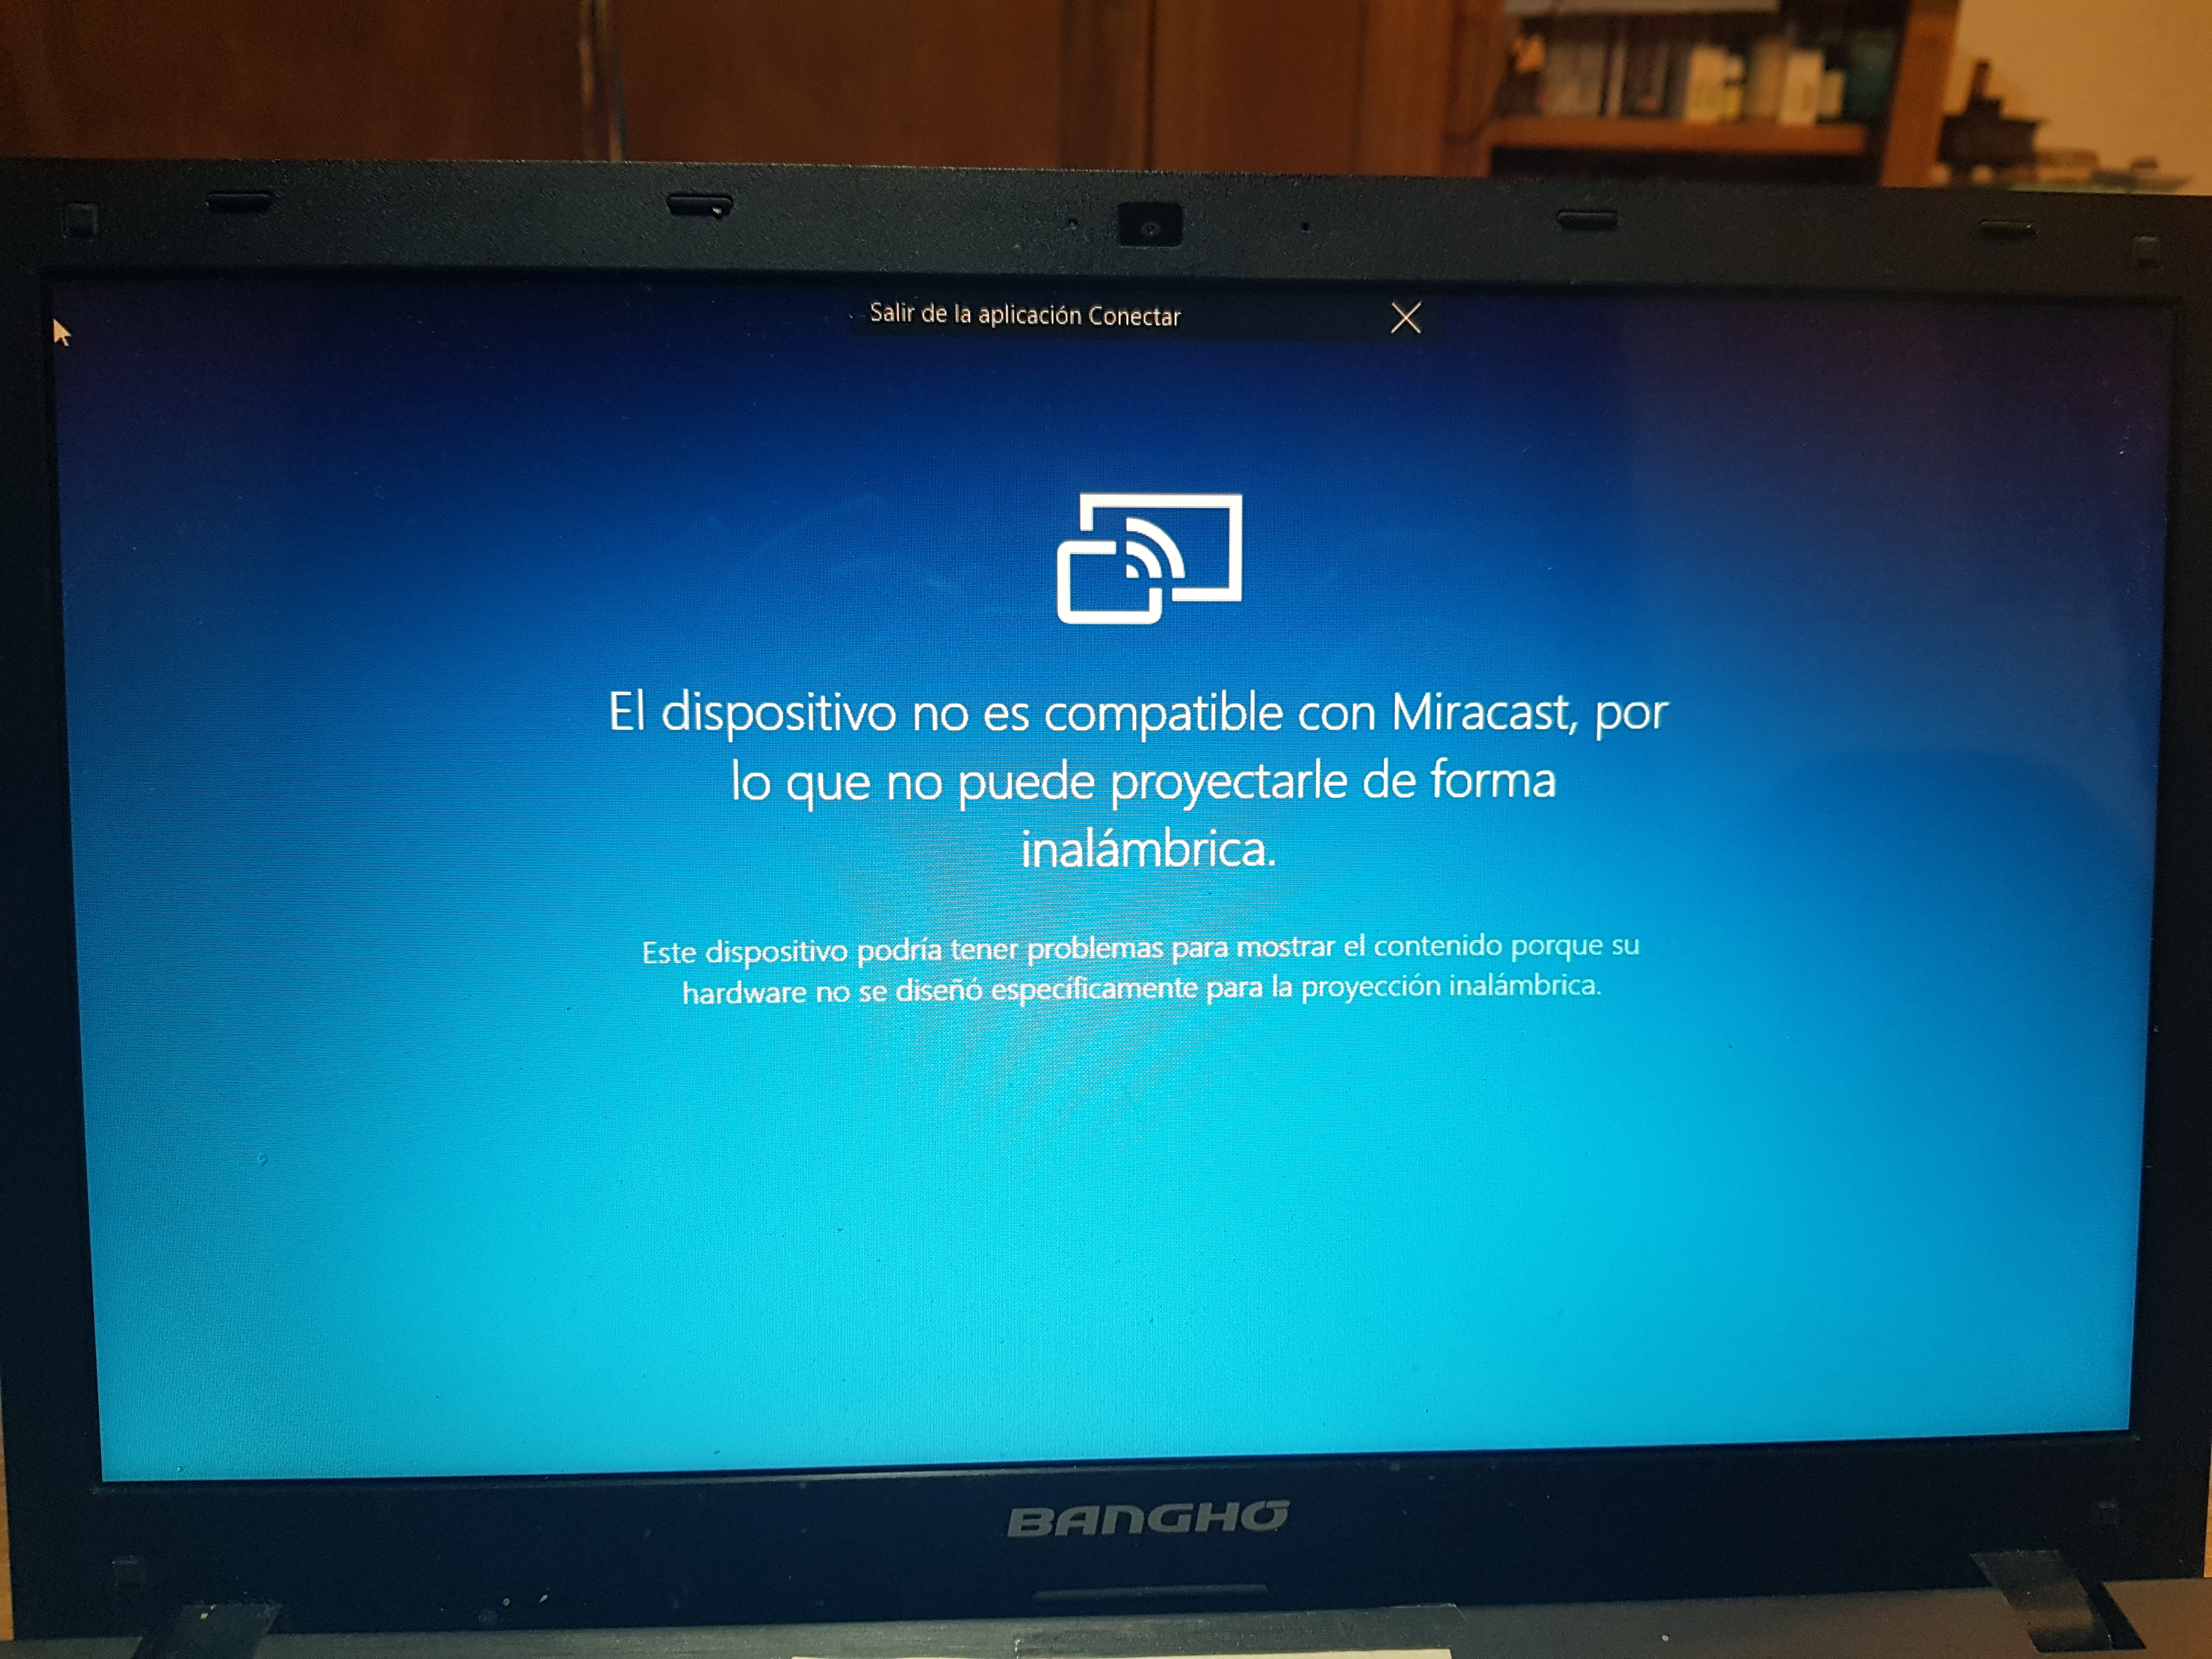 Windows 10 / No puedo iniciar sesión por mensaje de Miracast - Windows 10 Me Pide Contraseña Para Iniciar Sesion